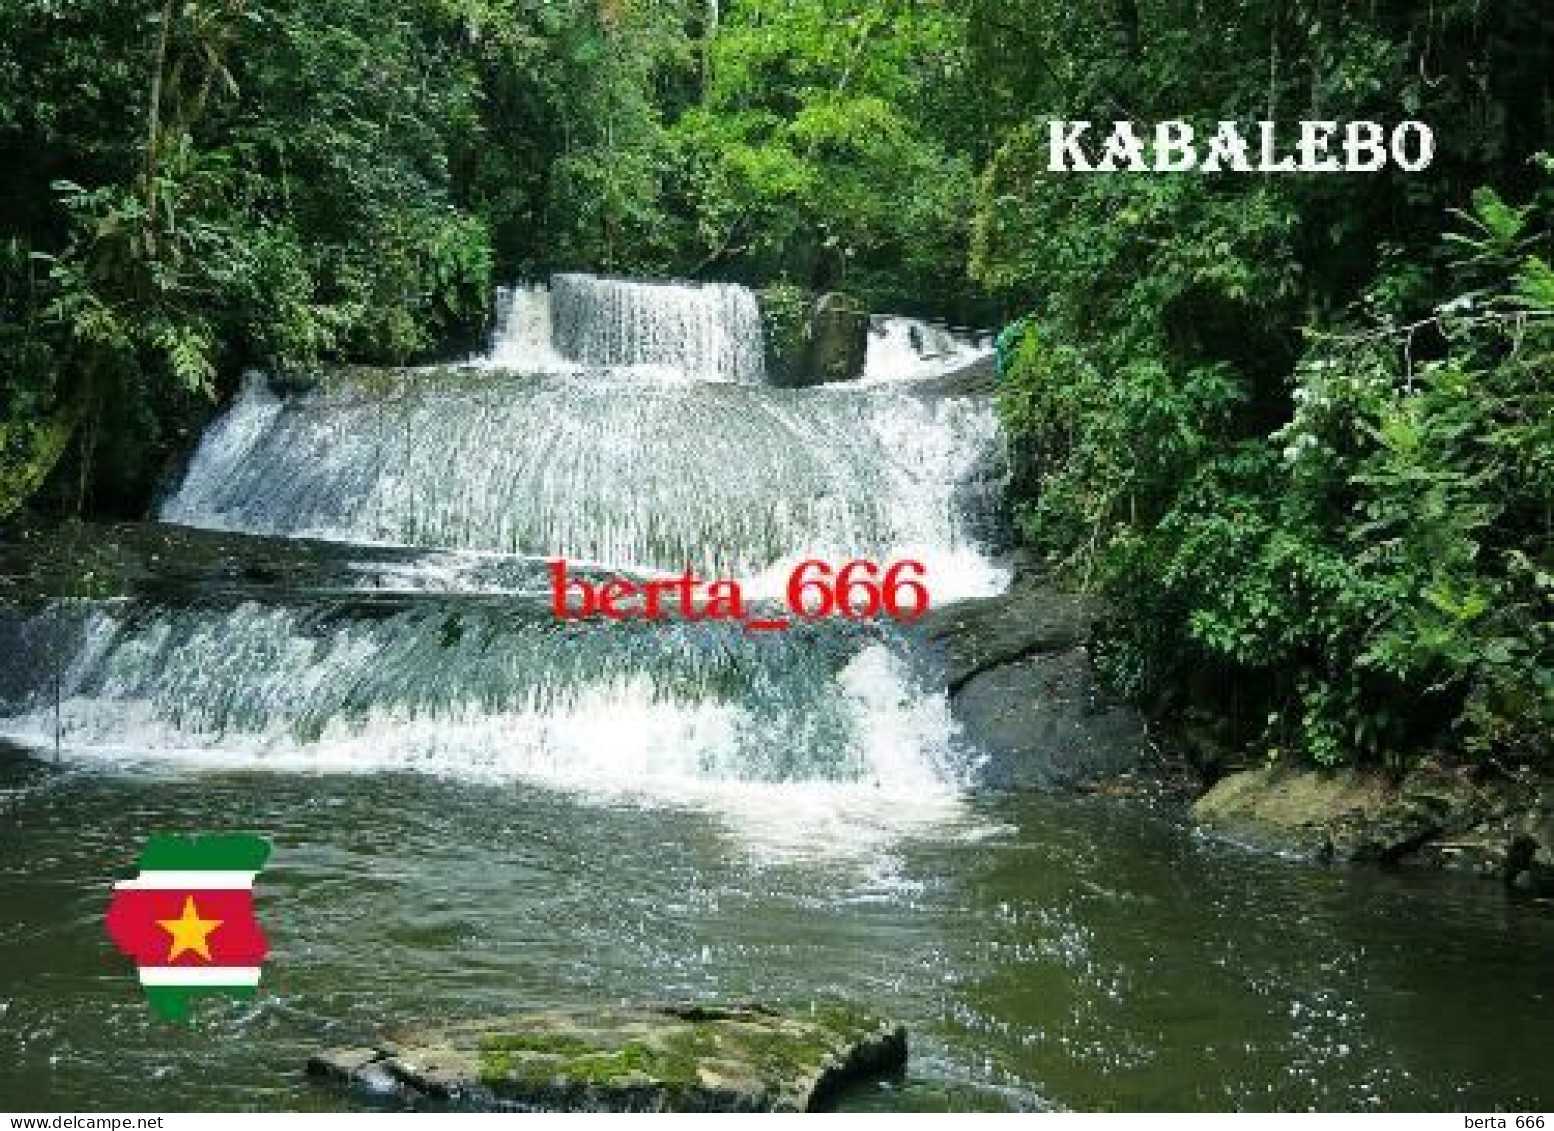 Suriname Kabalebo Falls New Postcard - Surinam